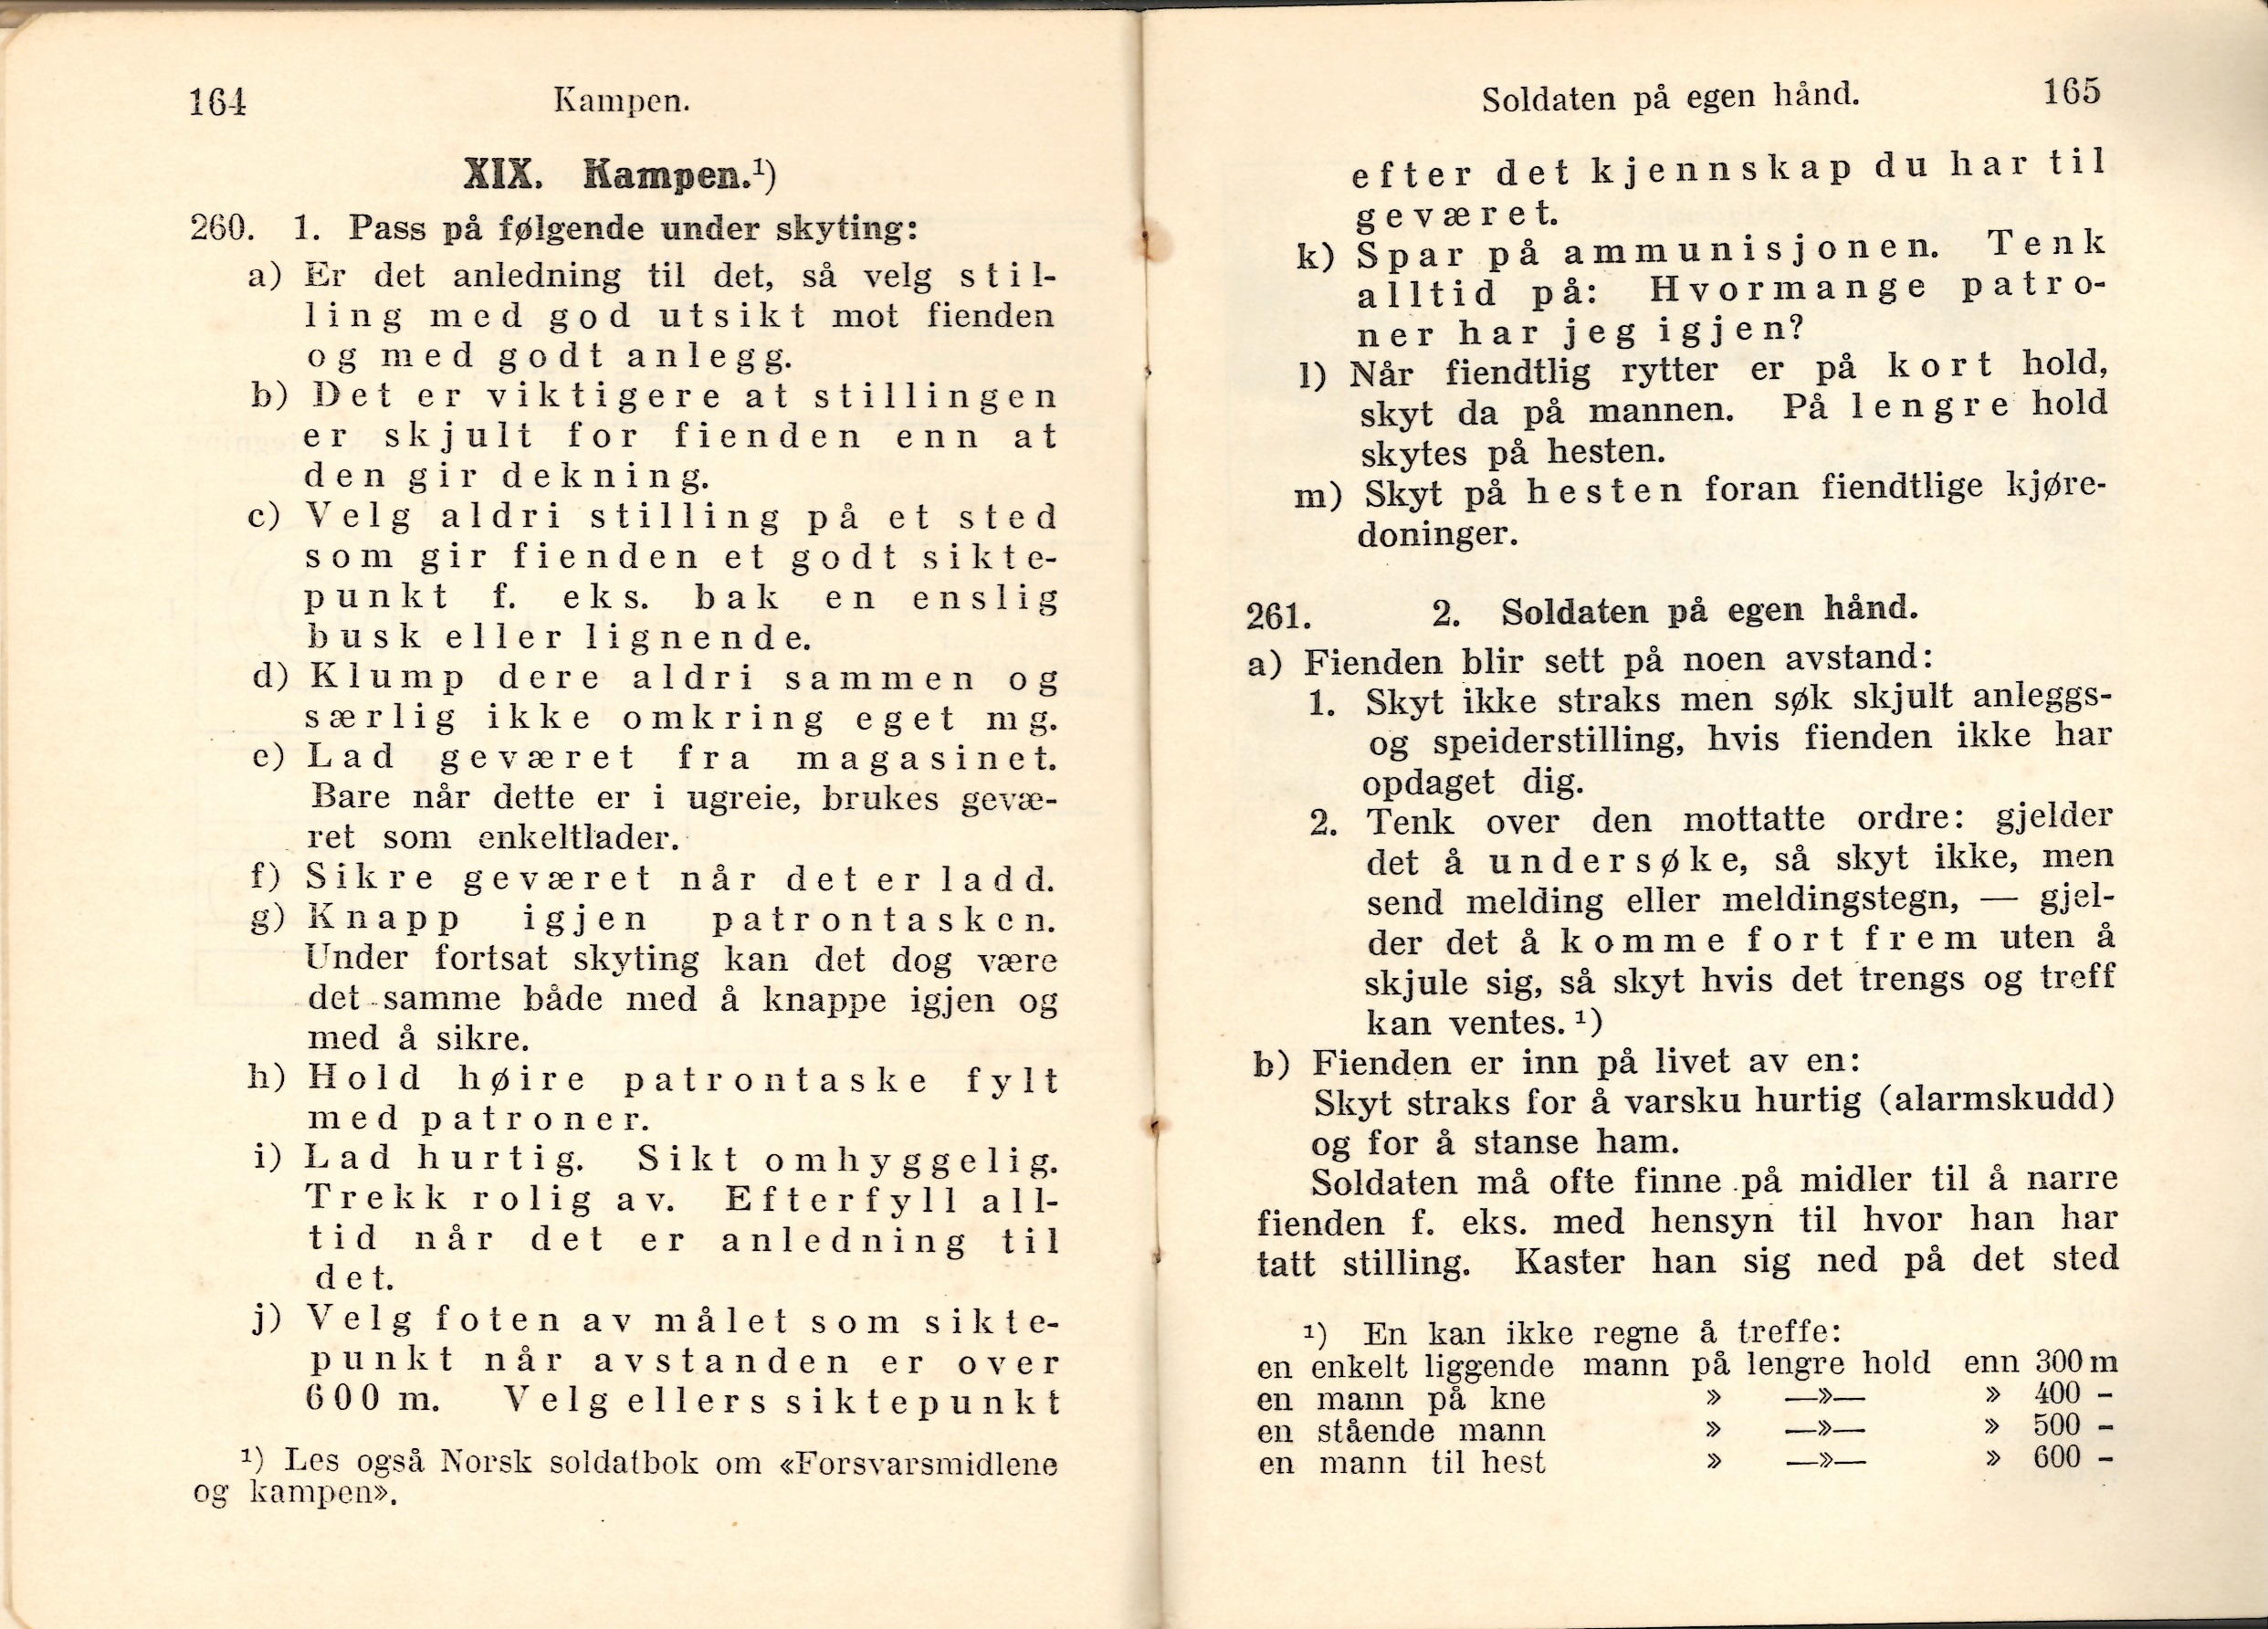 ./doc/reglement/Haandbok1925/Haandbok-for-infanteristen-1925-27.jpg